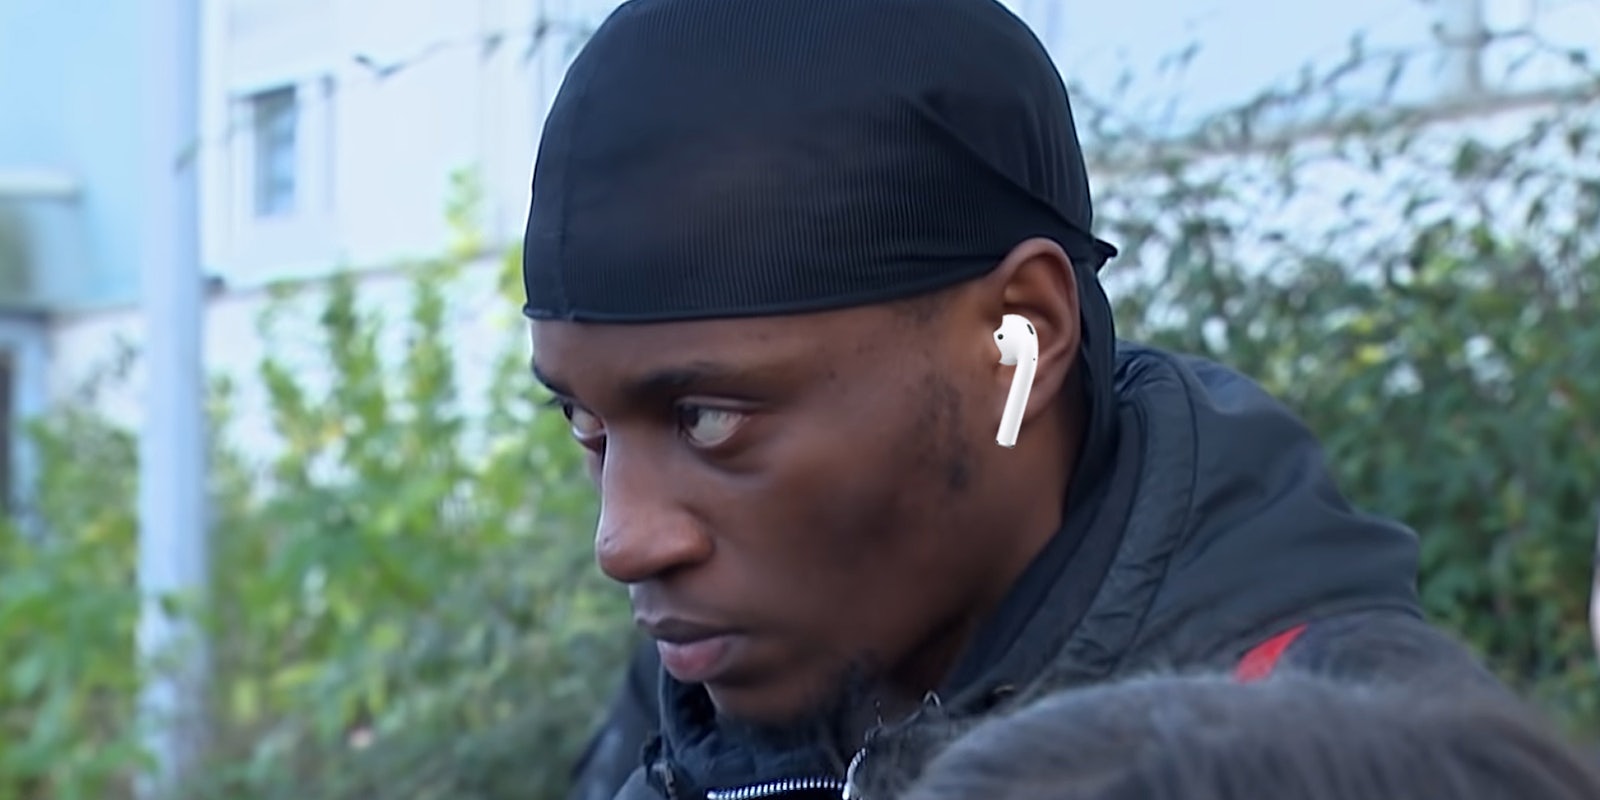 man staring intently wearing earpod